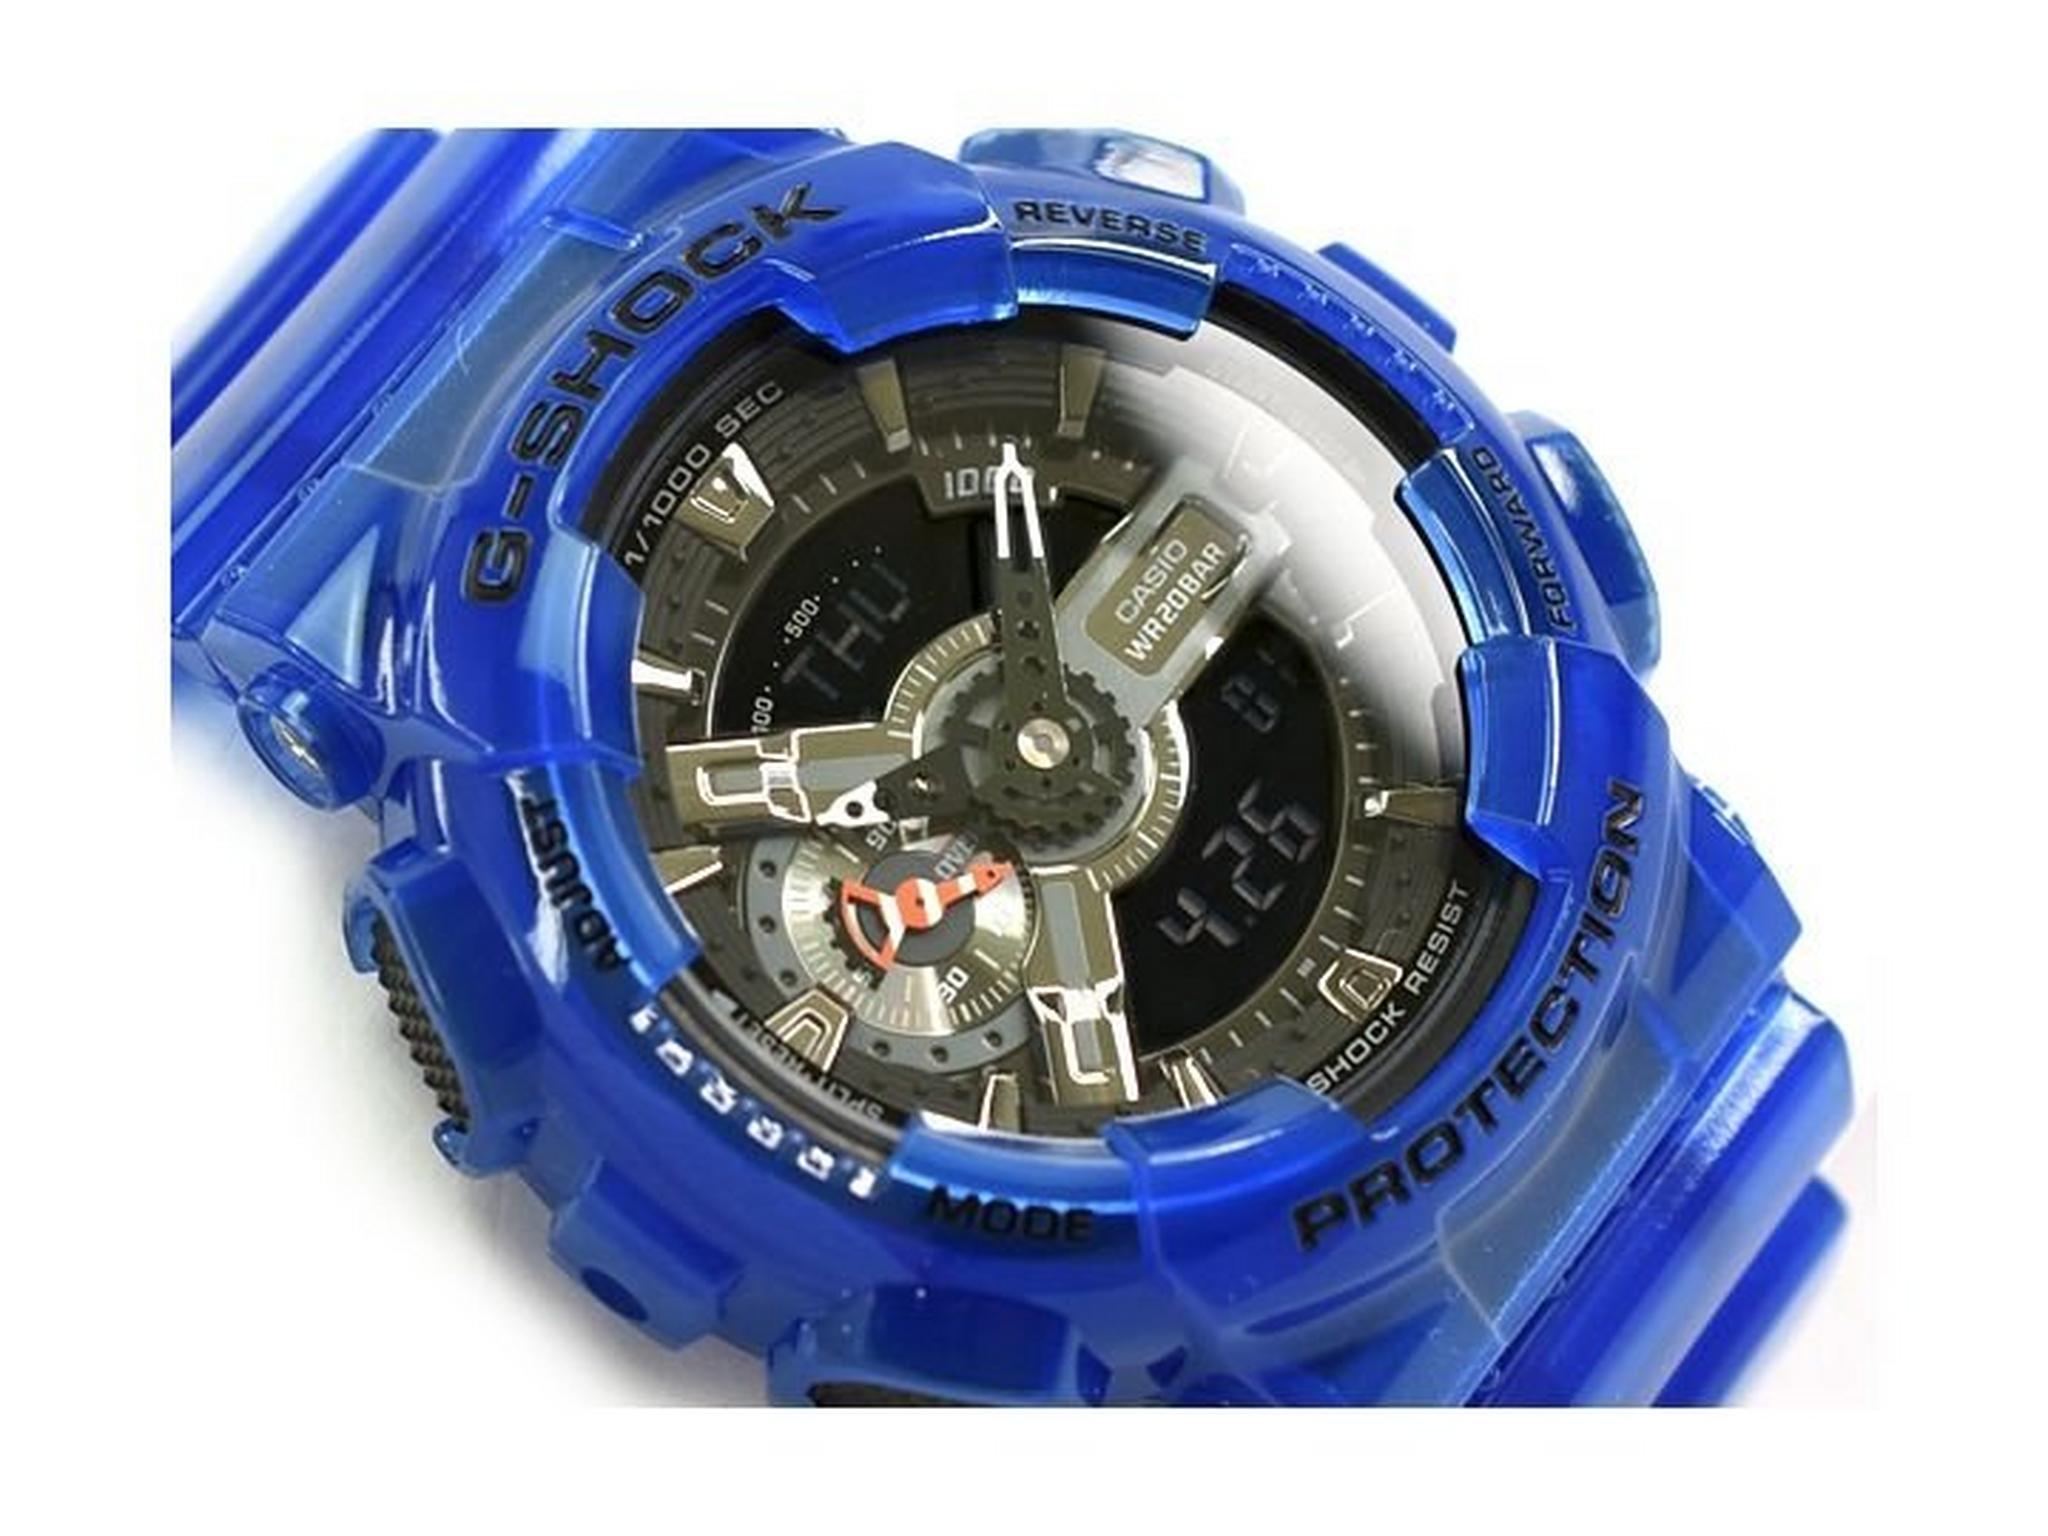 Casio G-Shock Blue Band Sport Watch (GA-110CR-2ADR)